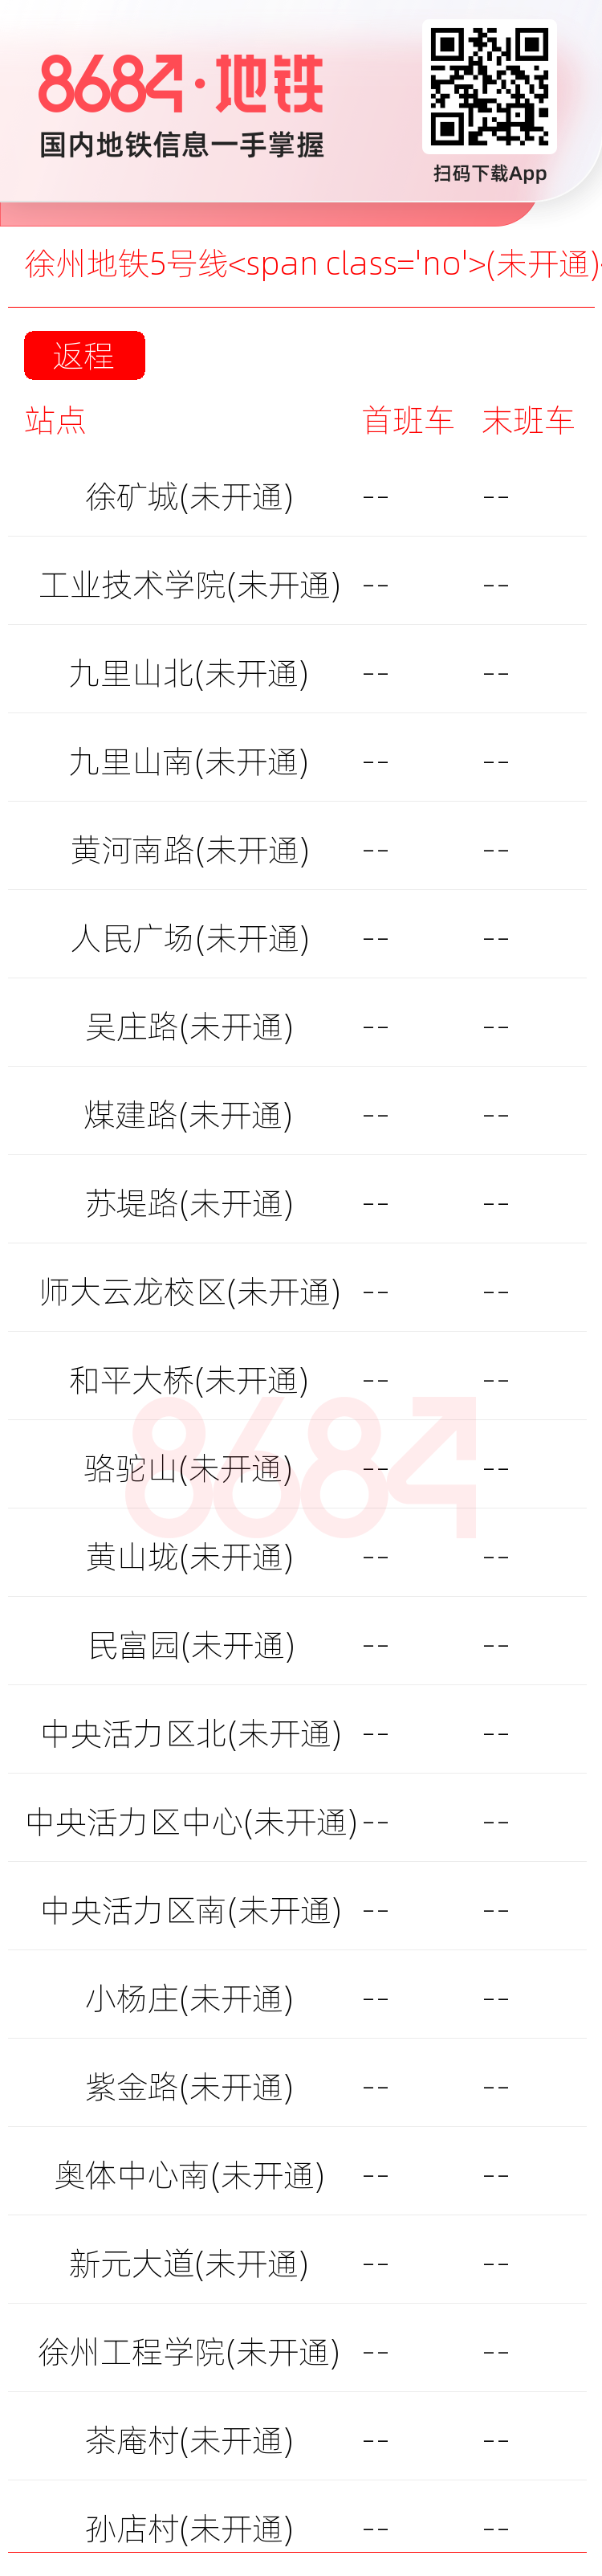 徐州地铁5号线<span class='no'>(未开通)</span>运营时间表